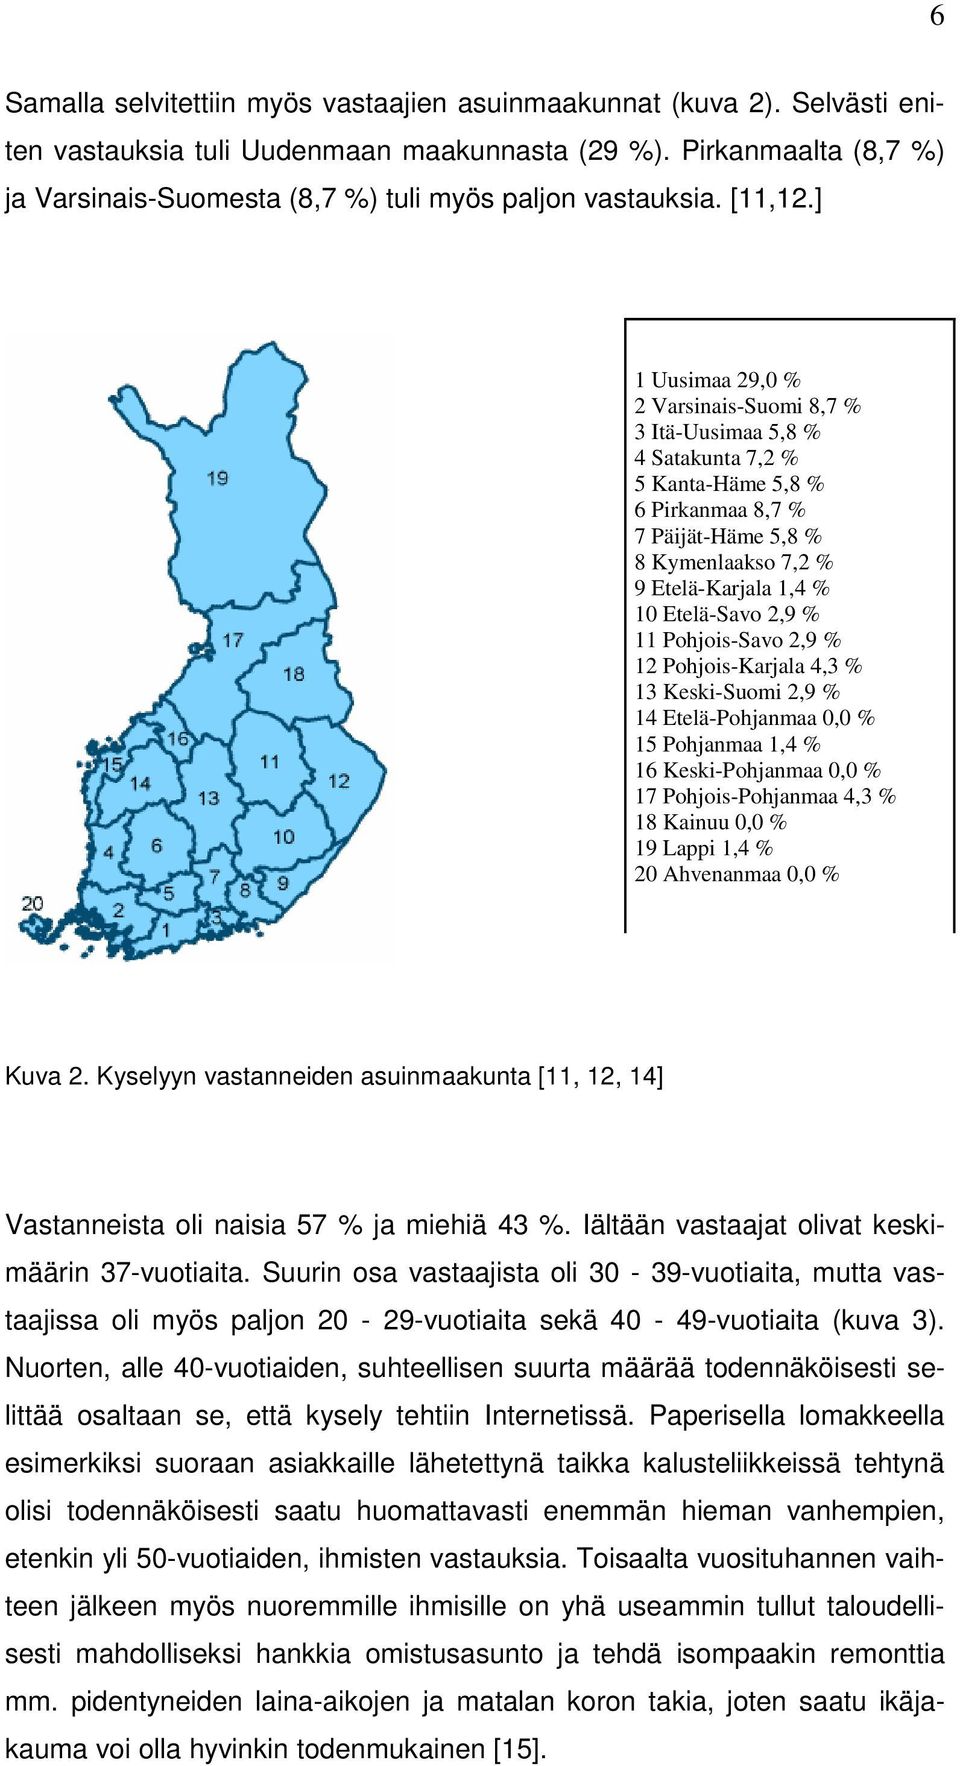 ] 1 Uusimaa 29,0 % 2 Varsinais-Suomi 8,7 % 3 Itä-Uusimaa 5,8 % 4 Satakunta 7,2 % 5 Kanta-Häme 5,8 % 6 Pirkanmaa 8,7 % 7 Päijät-Häme 5,8 % 8 Kymenlaakso 7,2 % 9 Etelä-Karjala 1,4 % 10 Etelä-Savo 2,9 %